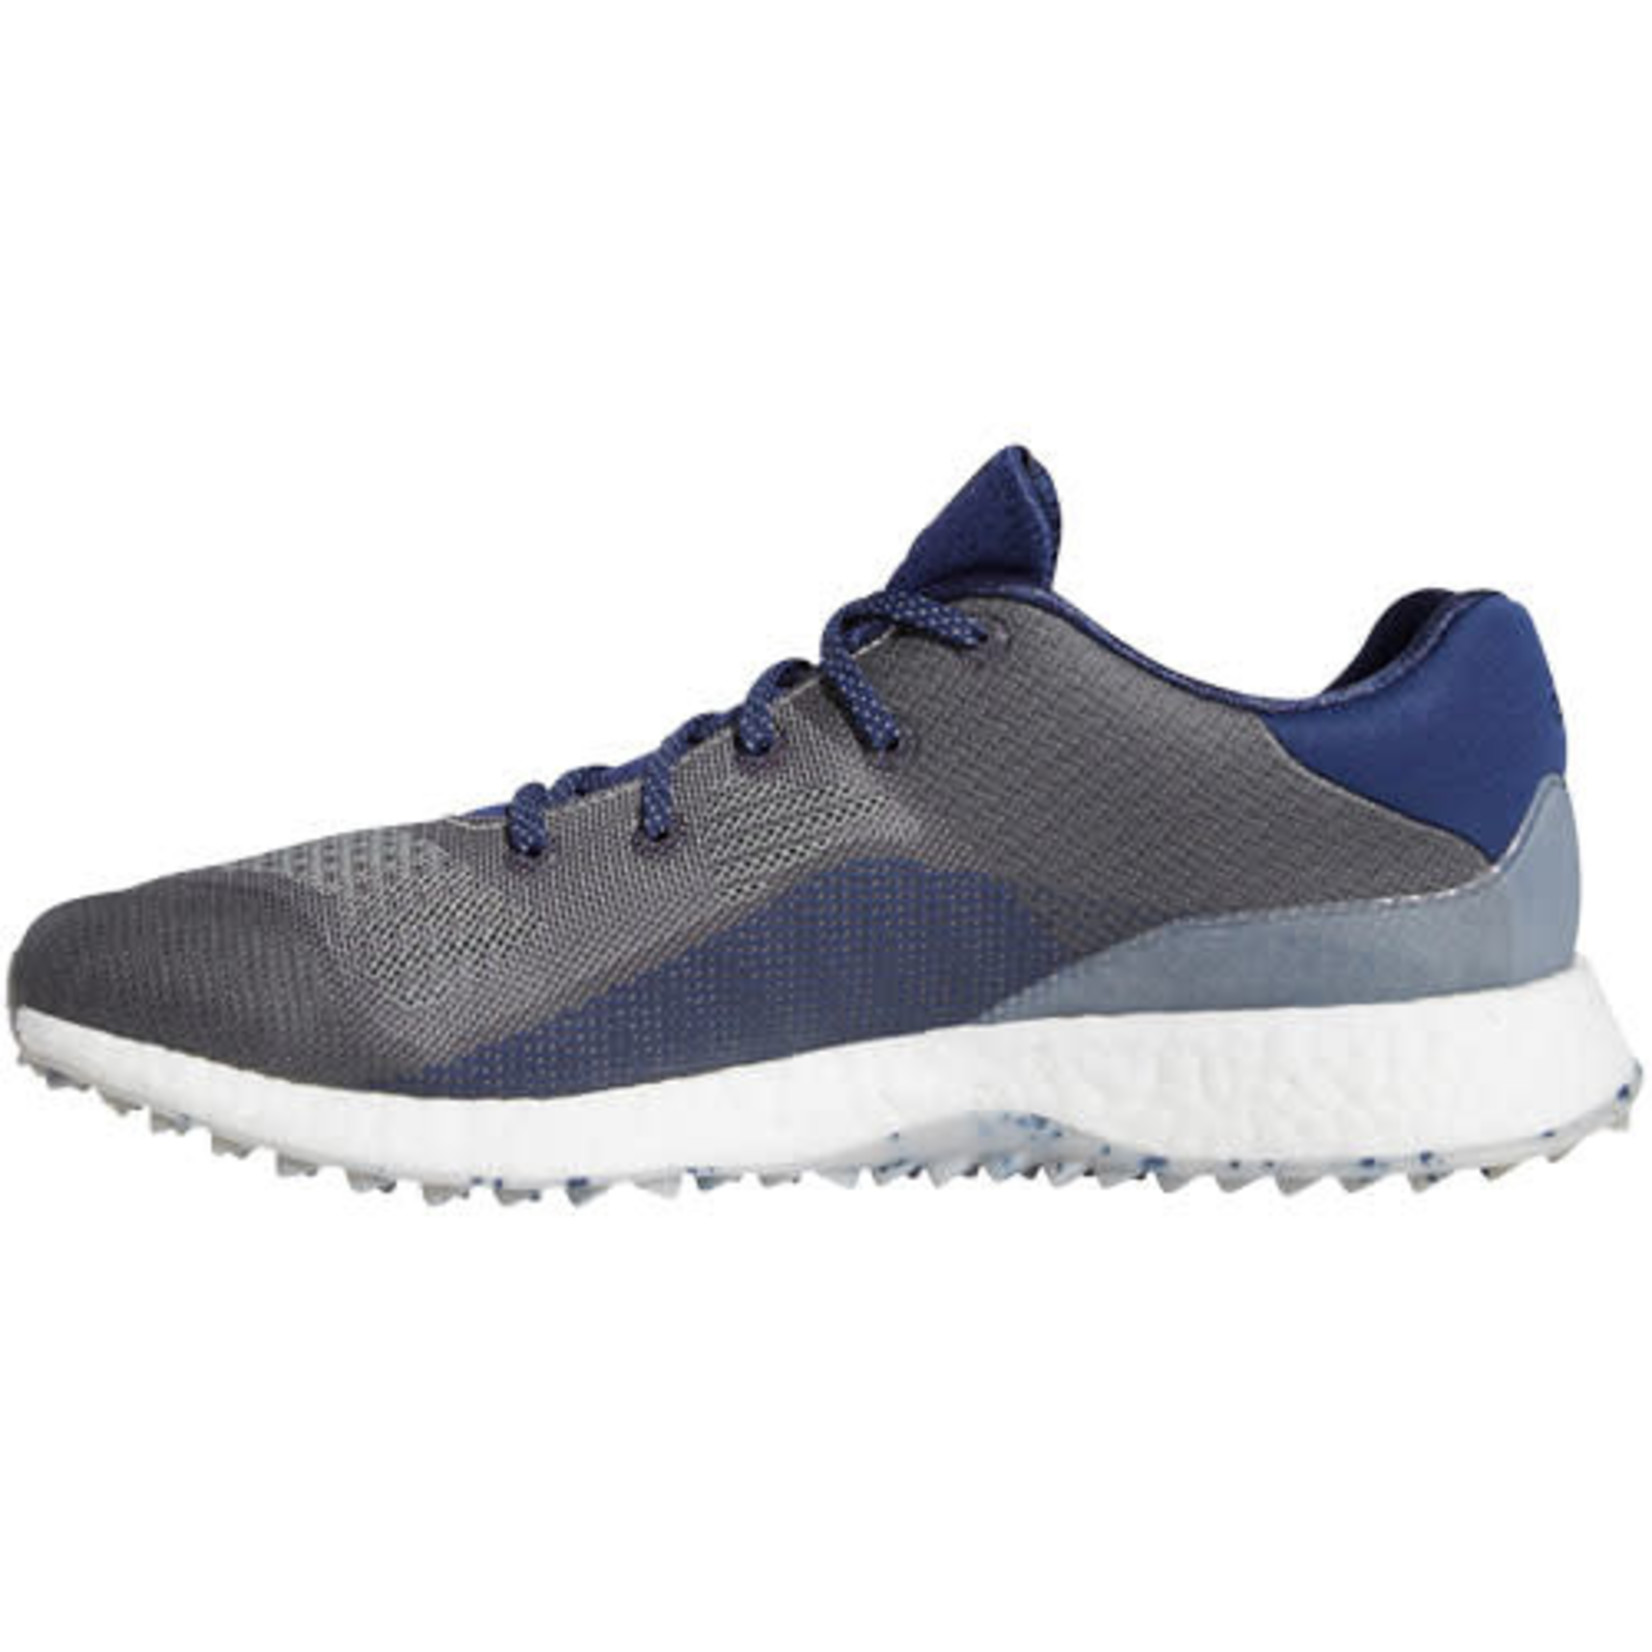 Adidas Men's Adidas Crossknit DPR Spikeless Golf Shoe Grey